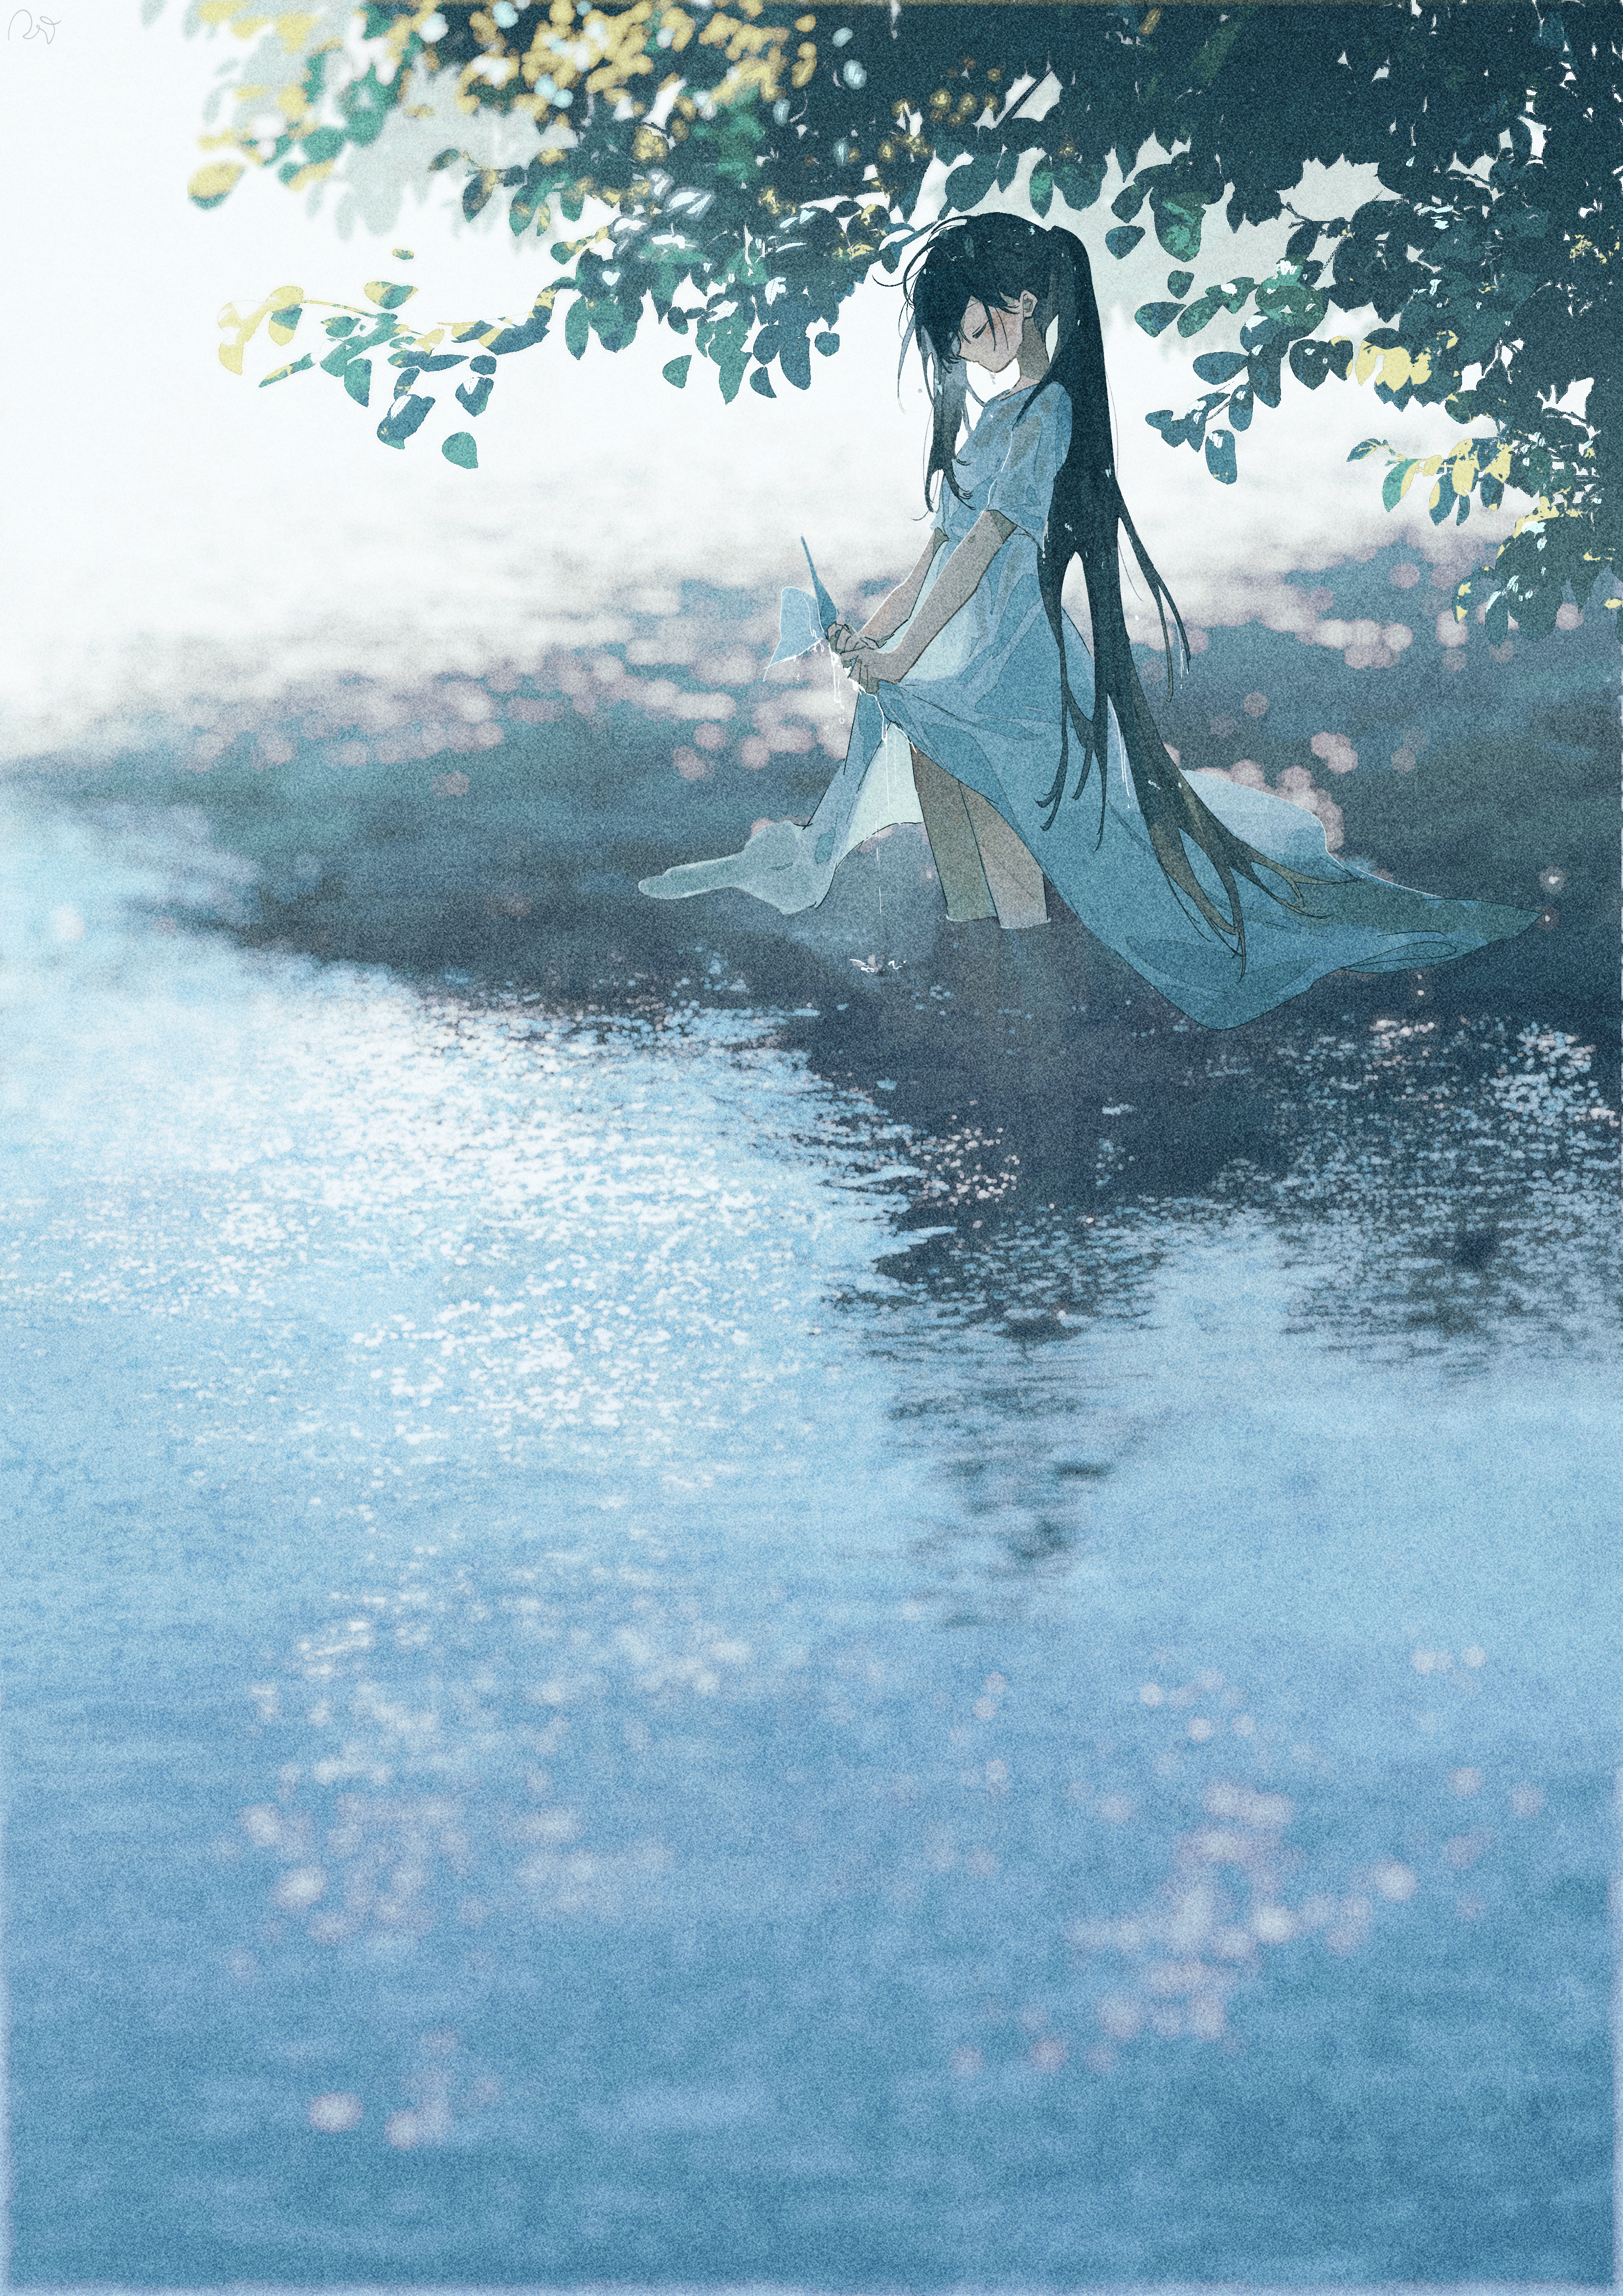 Anime 2894x4093 Potg anime girls illustration artwork vertical white dress long hair trees shade wet clothing wet hair water